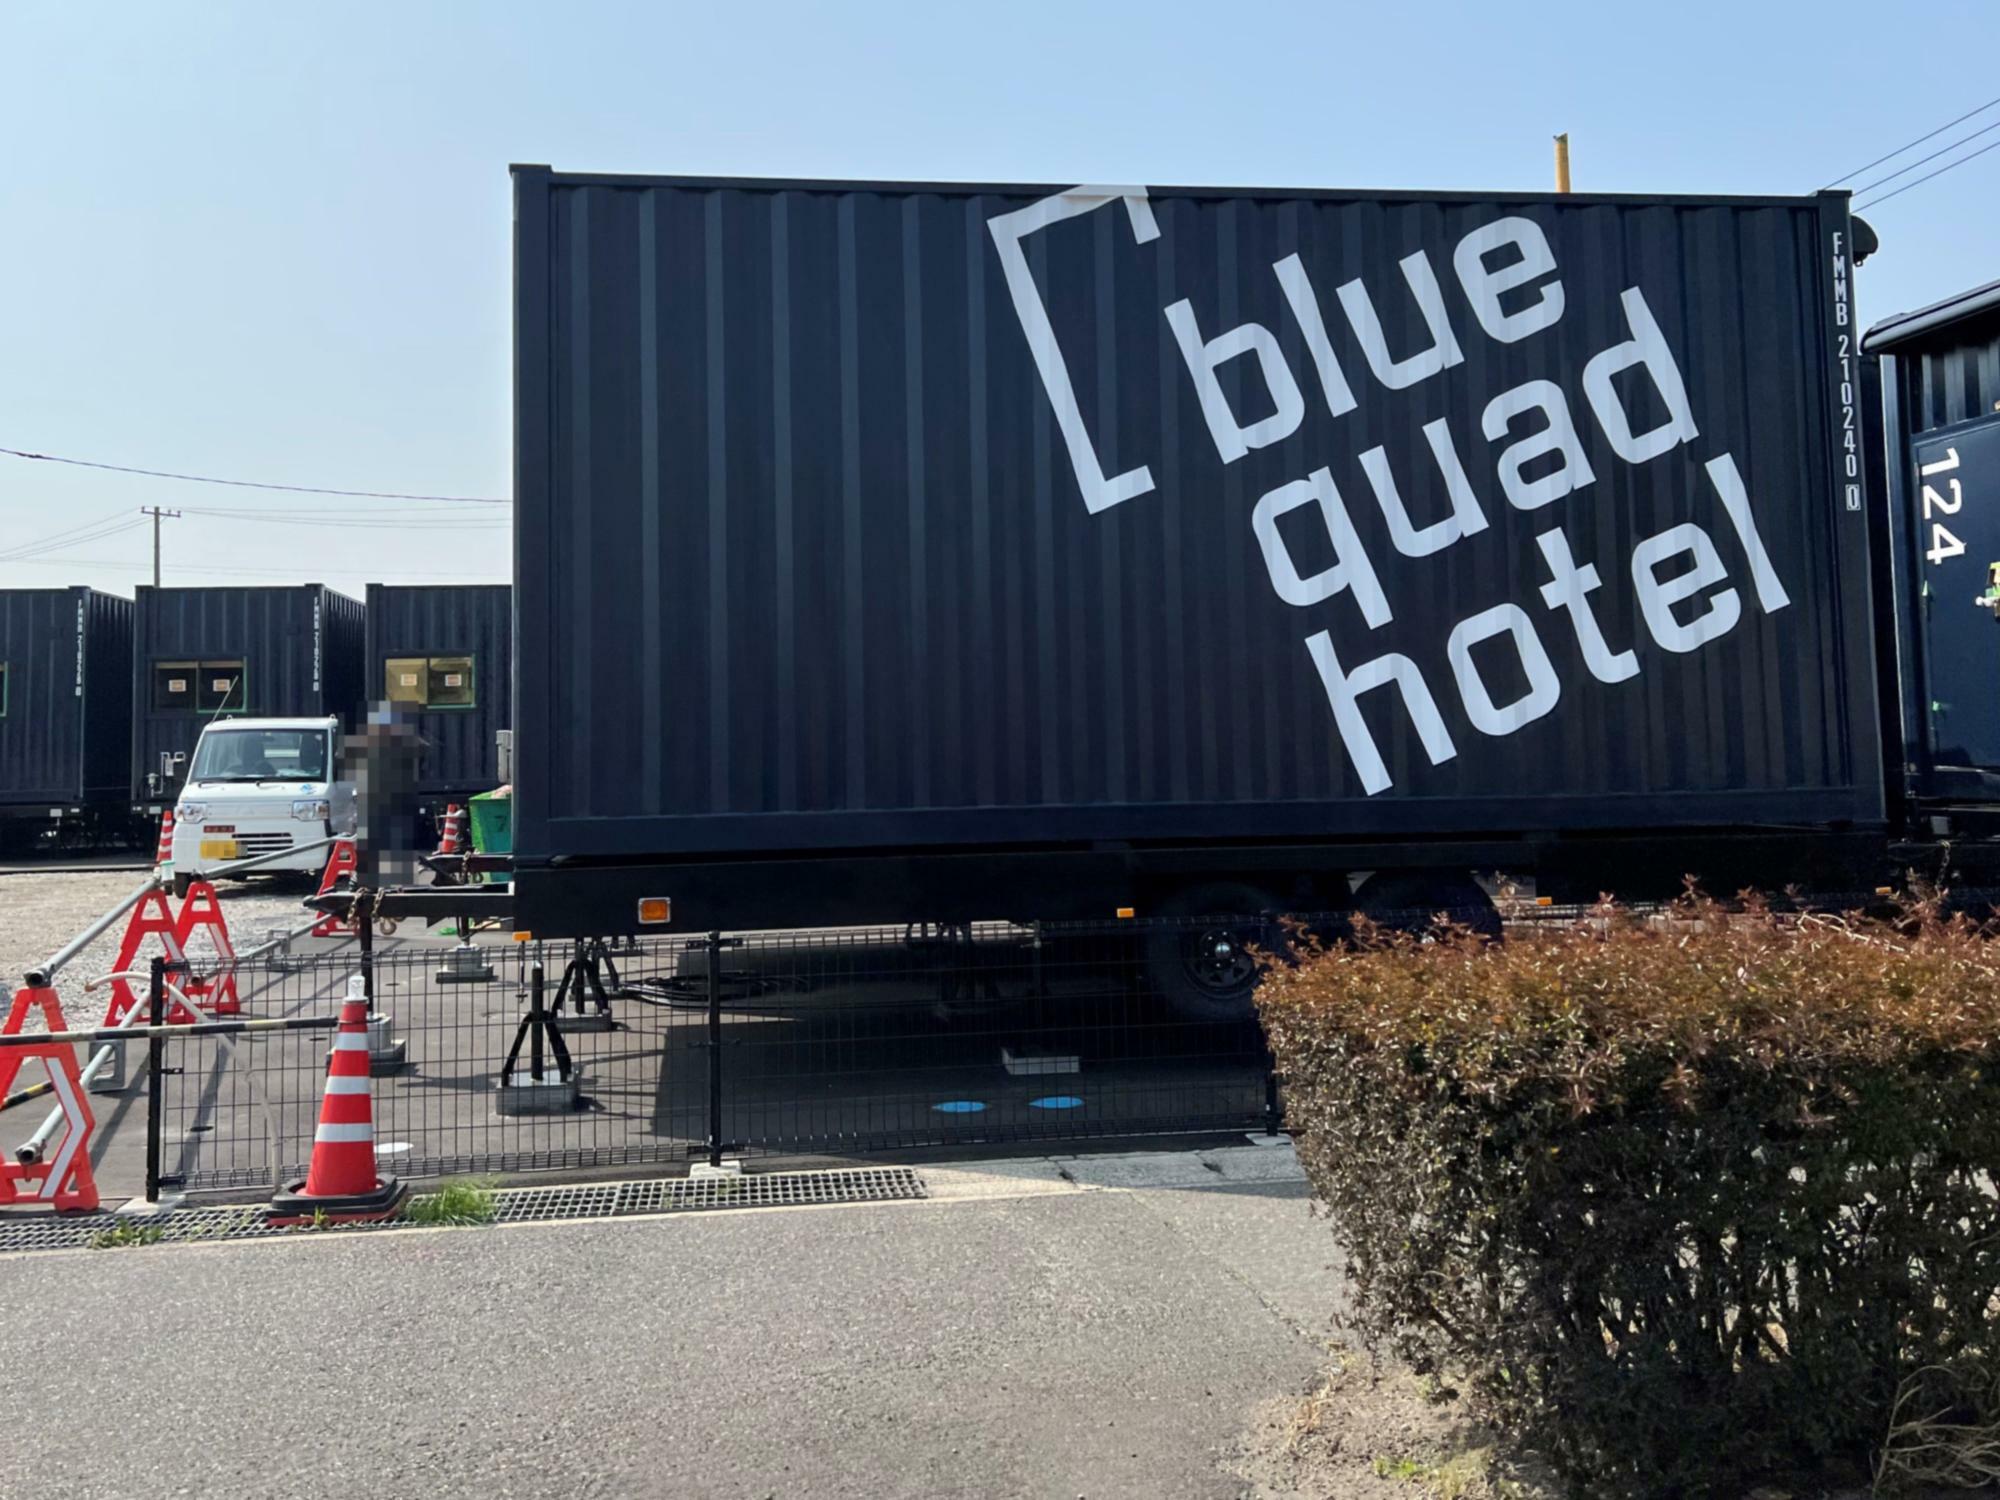 コンテナホテル「blue quad hotel」